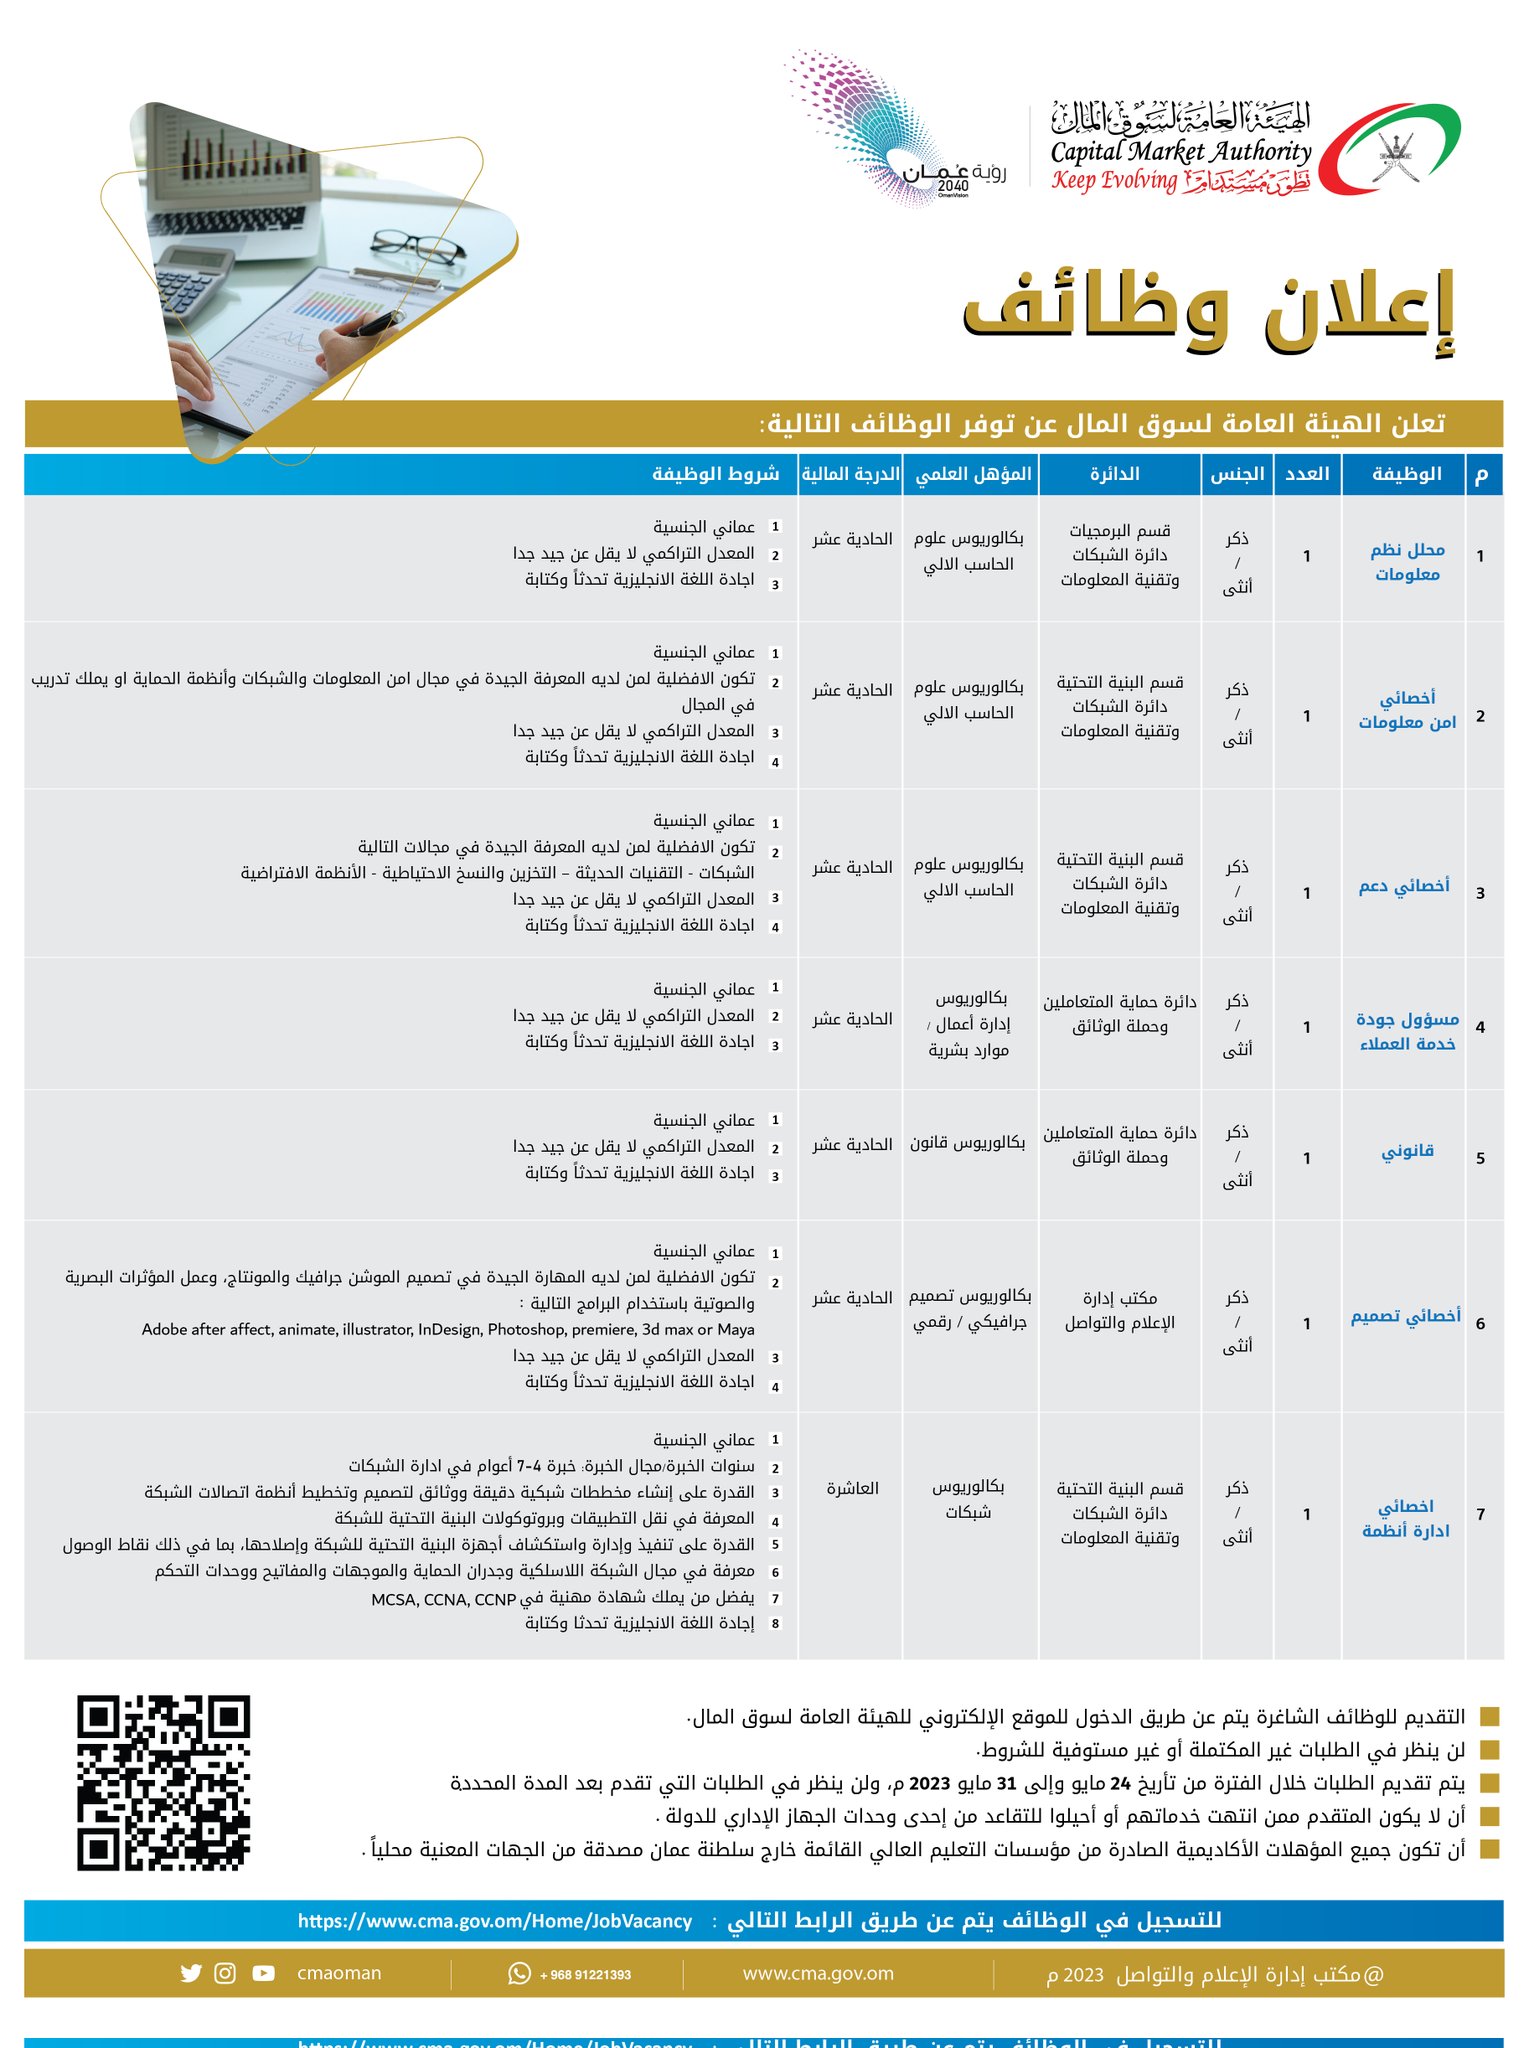 الهيئة العامة لسوق المال في في سلطنة عمان تعلن عن وظائف شاغرة برةاتب ومزايا عالية لجميع الجنسيات